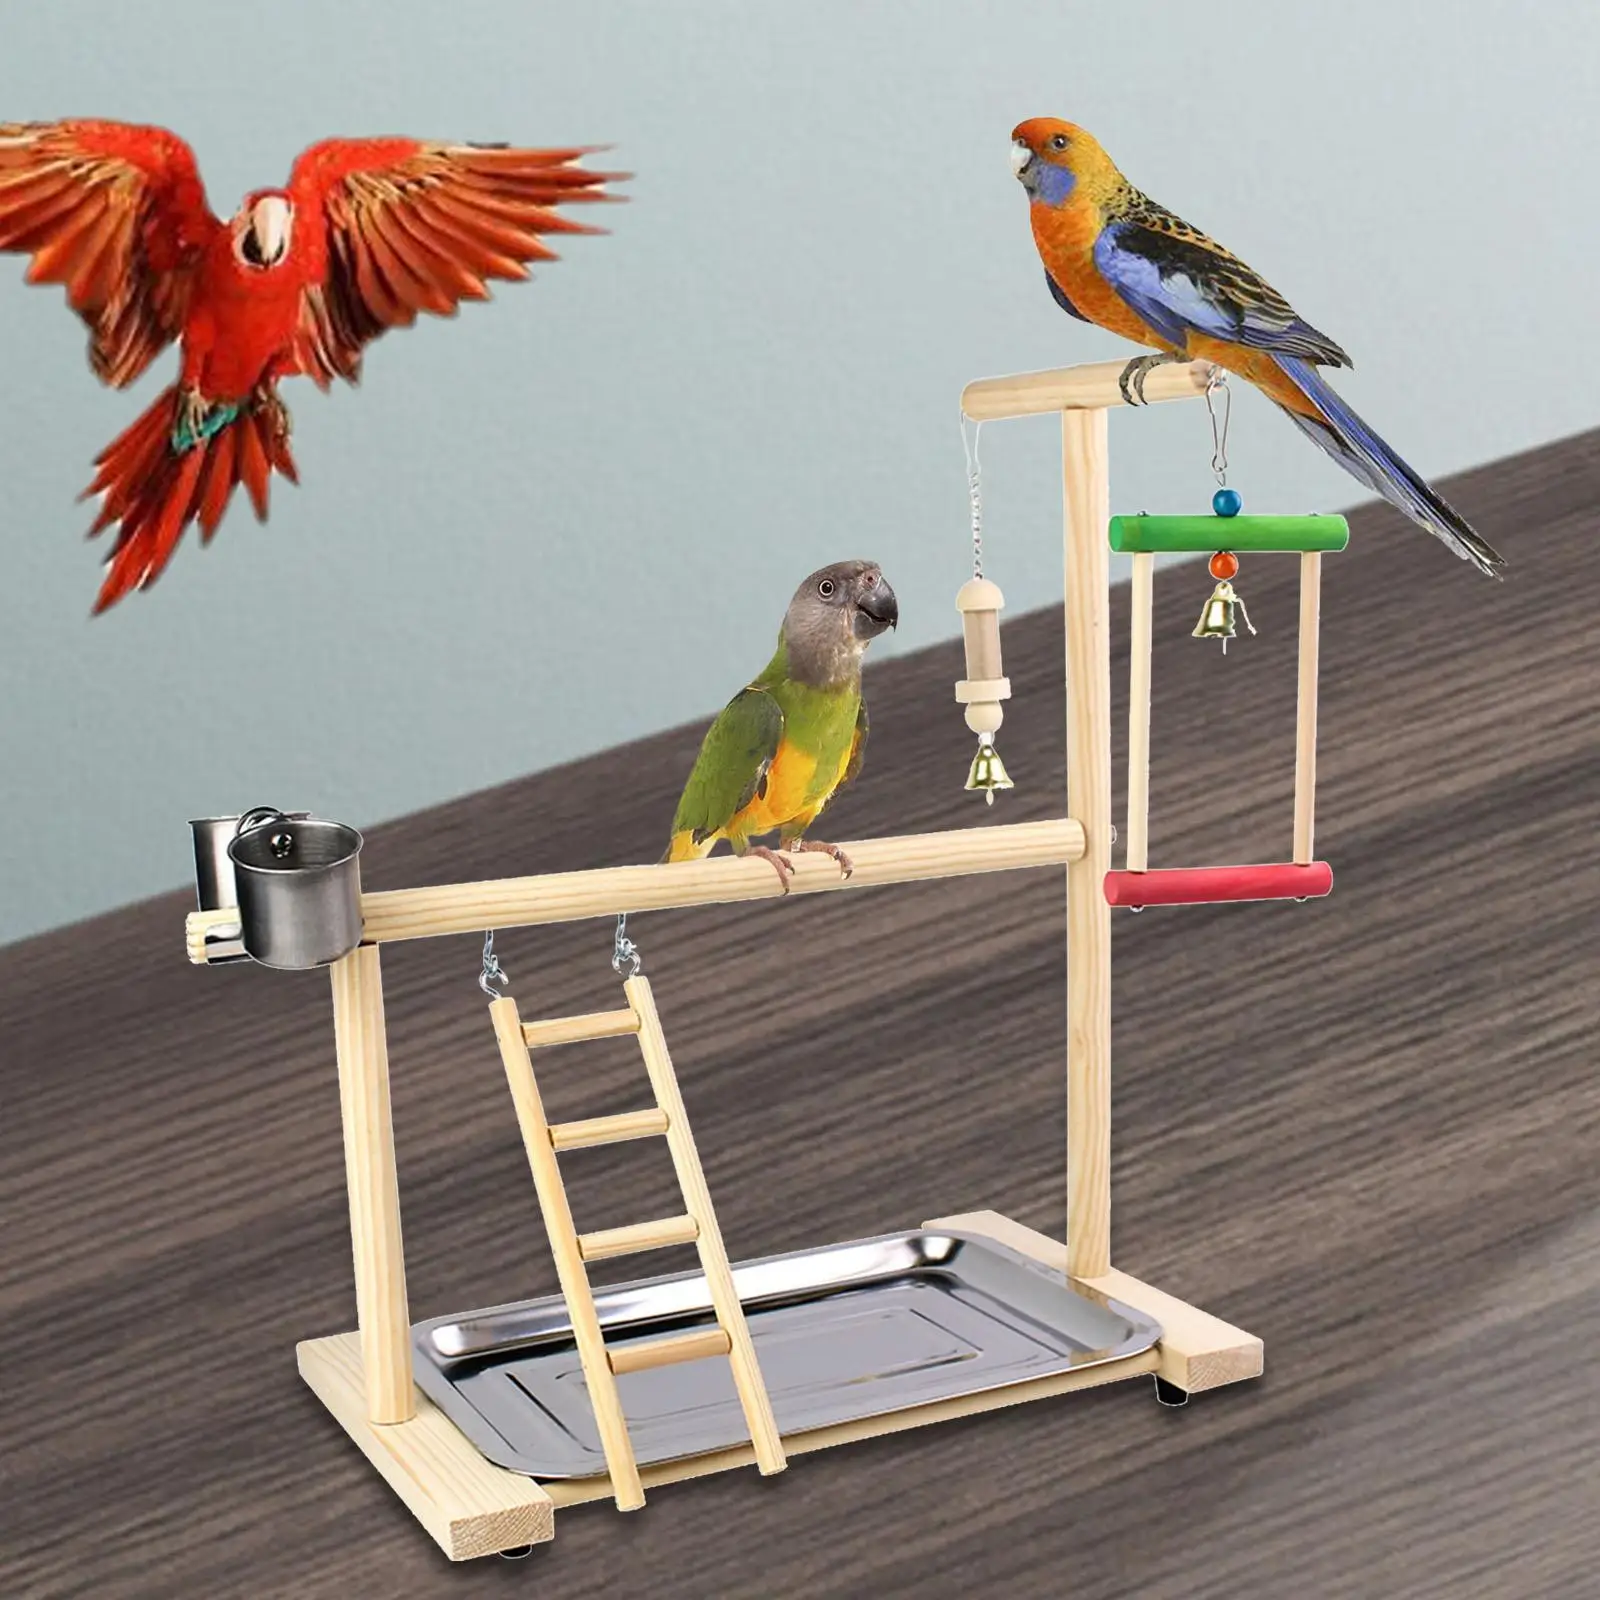 Wooden Bird Platform Perch Bird Playground with Tray Bird Play Stand Gym